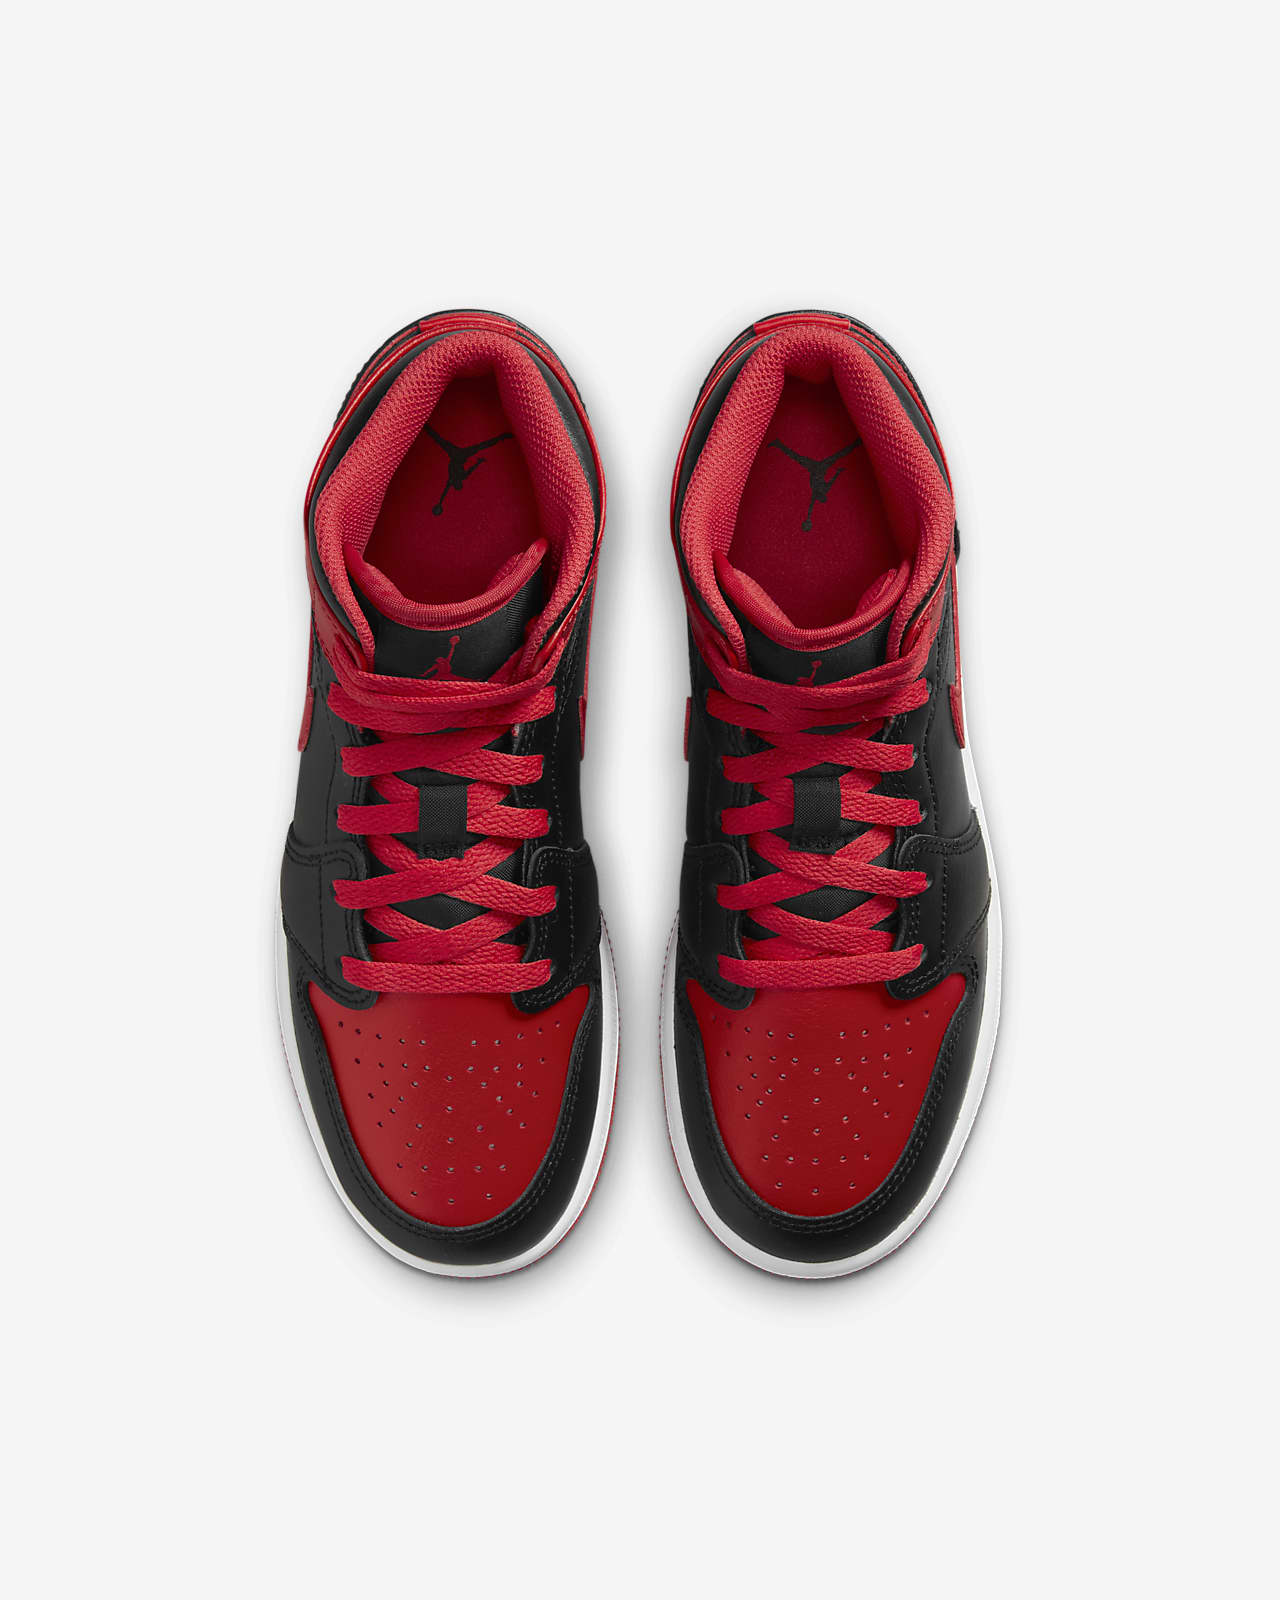 Air Jordan 1 Mid Older Kids' Shoes. Nike HR